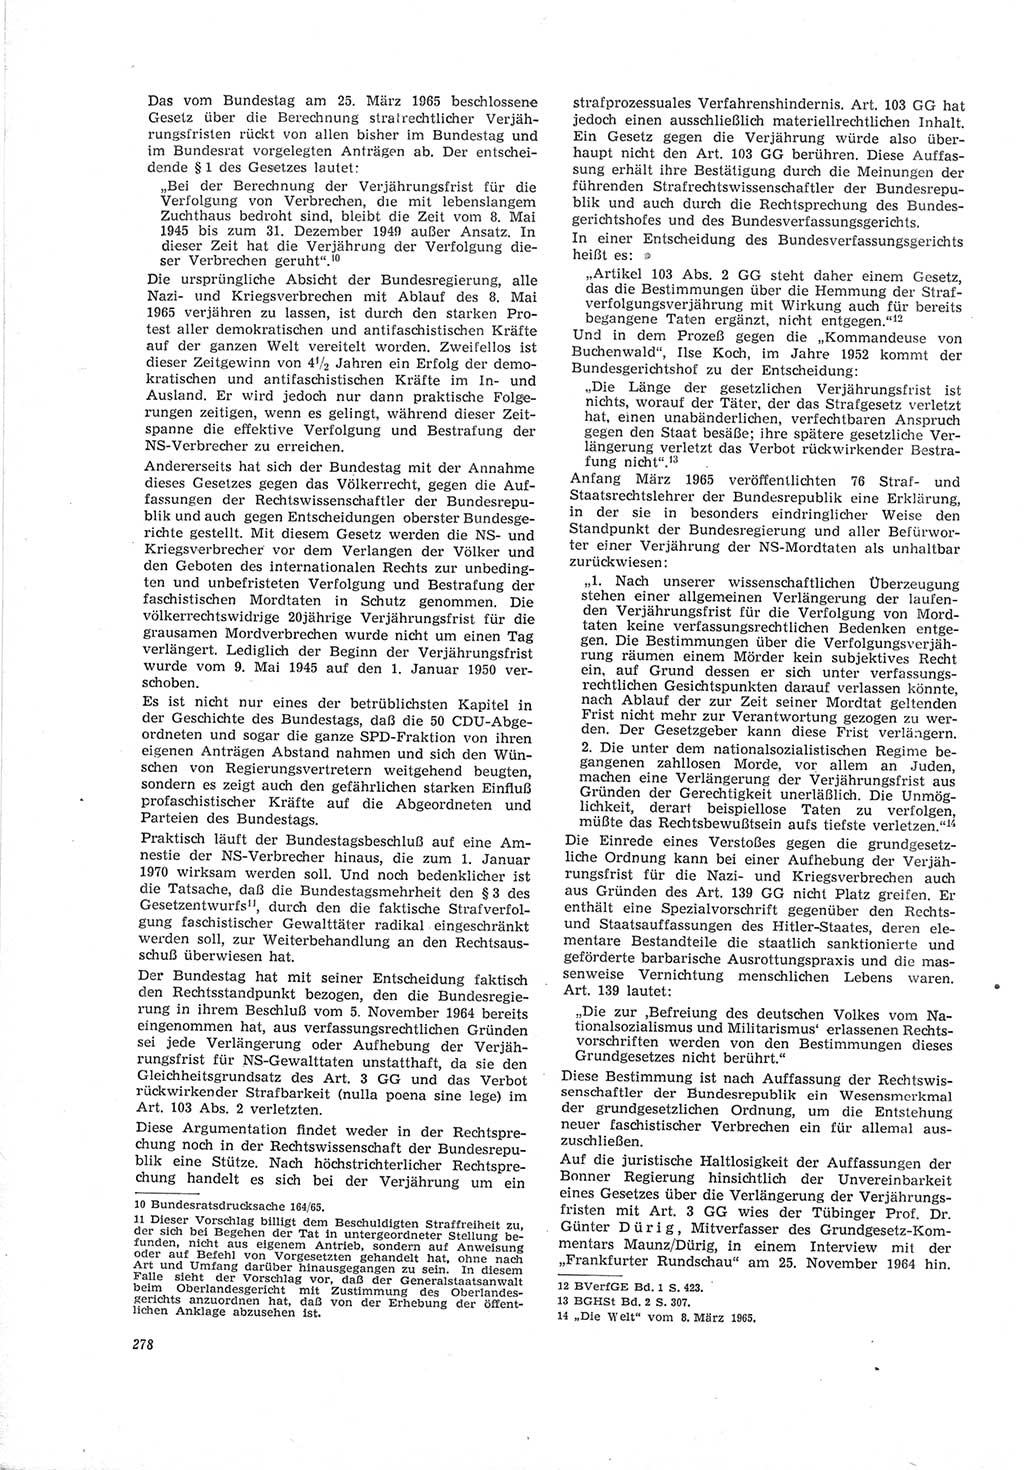 Neue Justiz (NJ), Zeitschrift für Recht und Rechtswissenschaft [Deutsche Demokratische Republik (DDR)], 19. Jahrgang 1965, Seite 278 (NJ DDR 1965, S. 278)